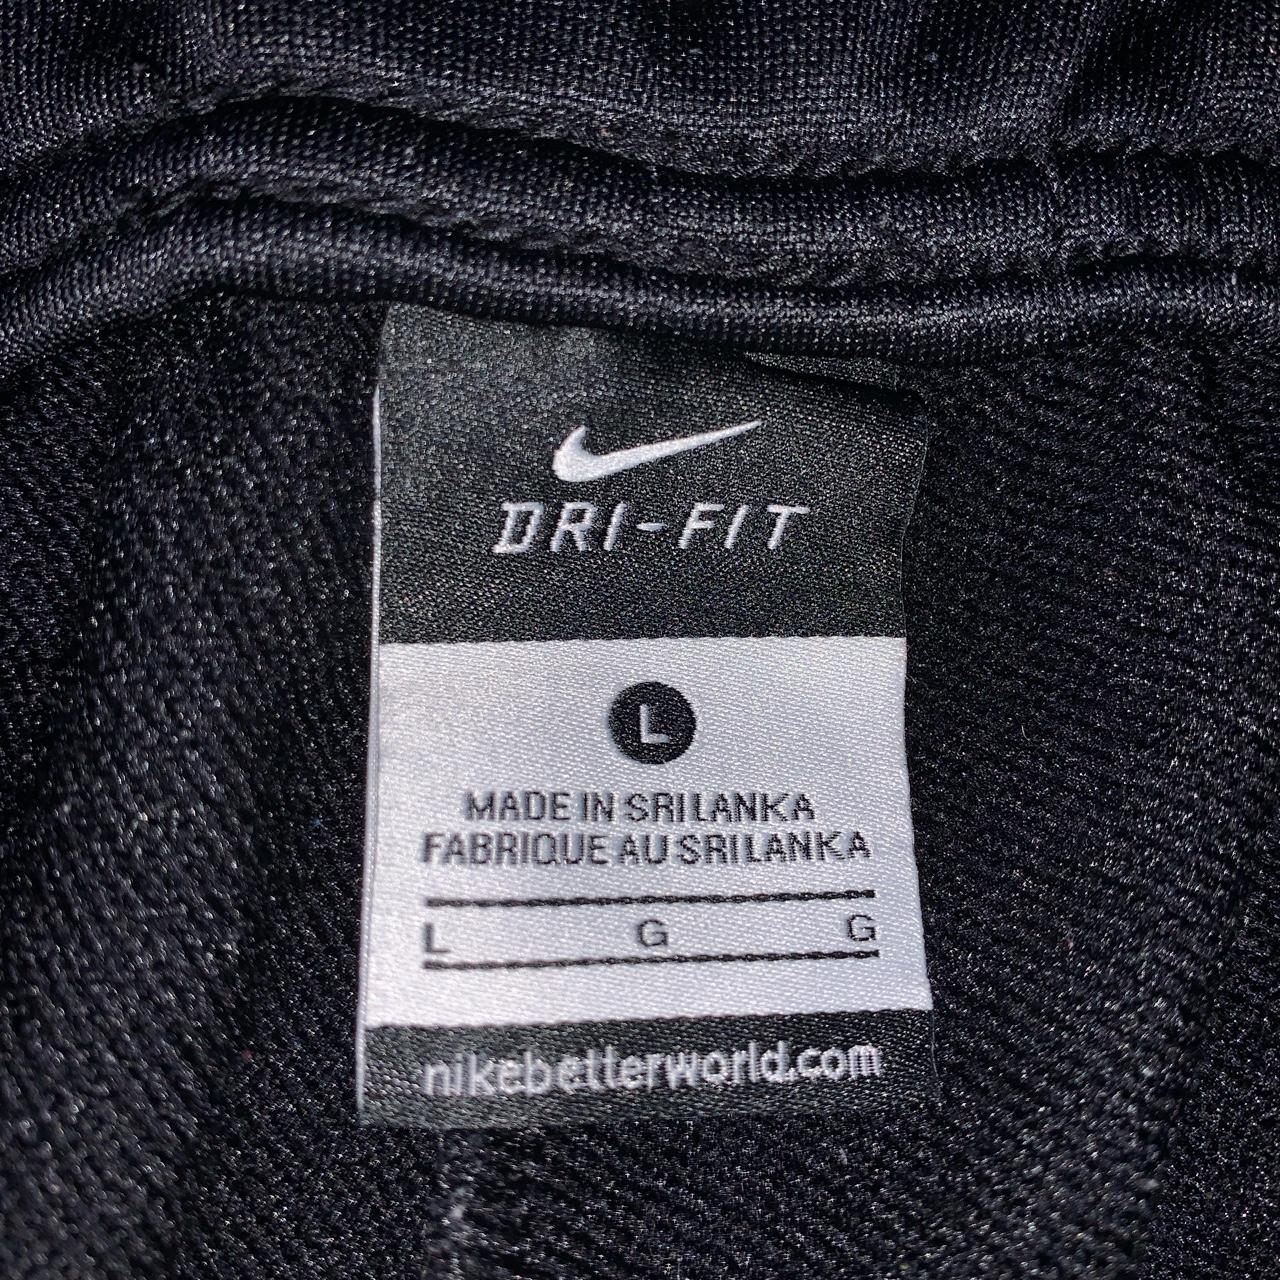 Nike Dri-fit sweatpants Black Mint Condition Size... - Depop